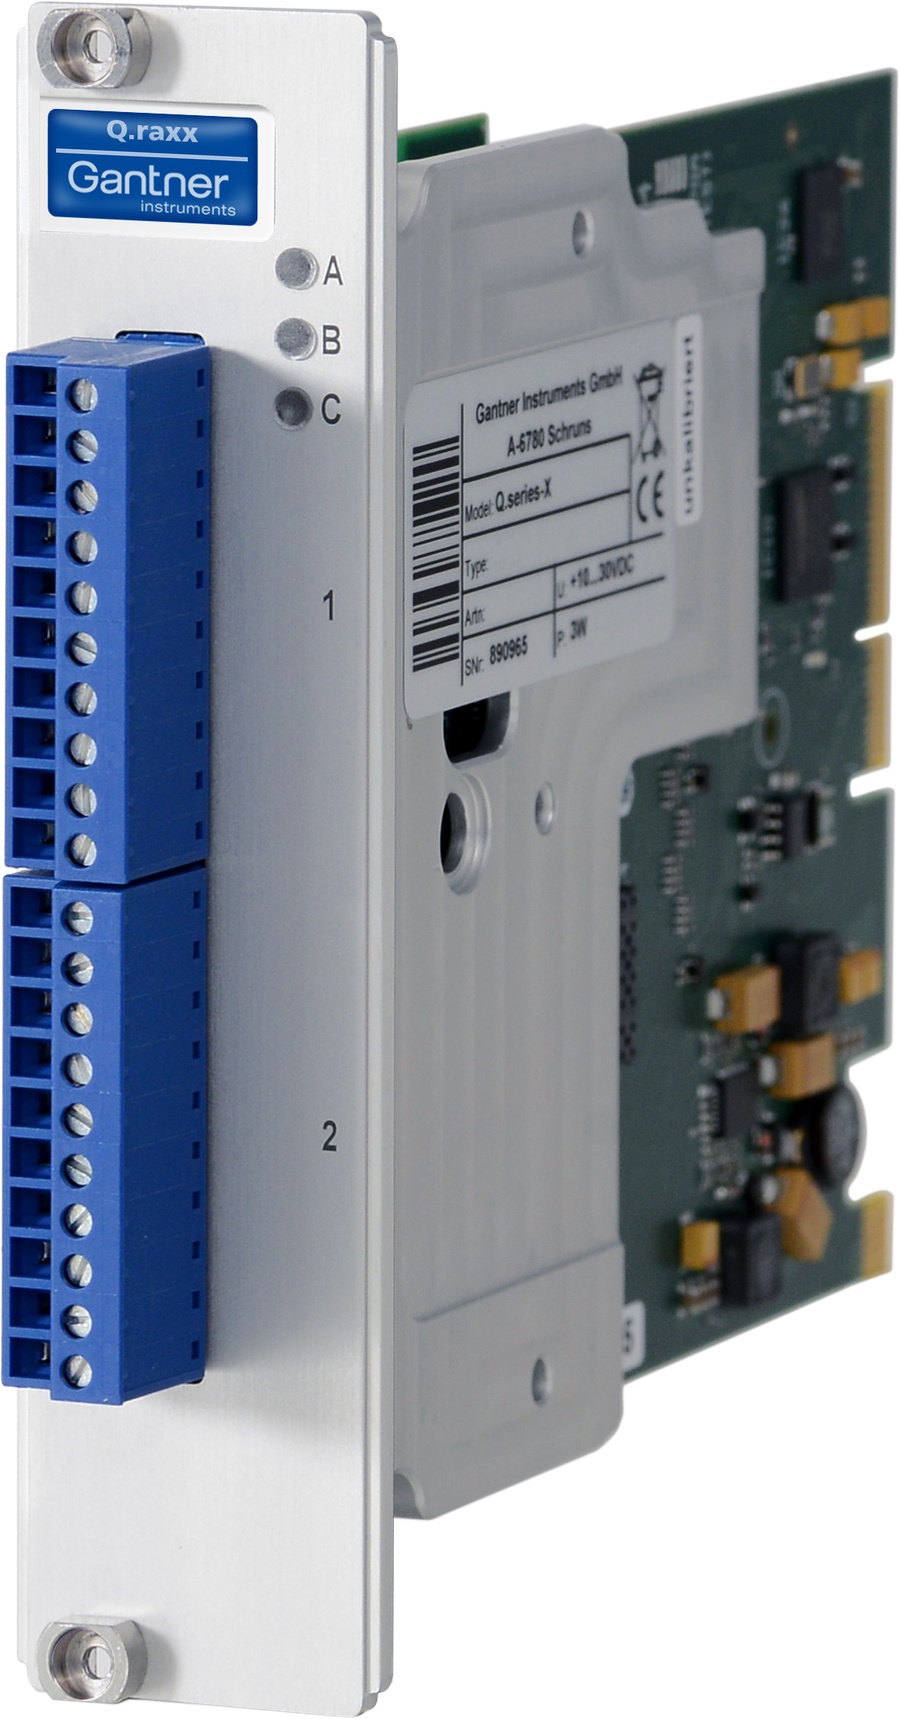 Q.raxx XL D105 - Datenerfassungsmodul (3HE) 16-kanaliges-digital-Ausgangsmodul